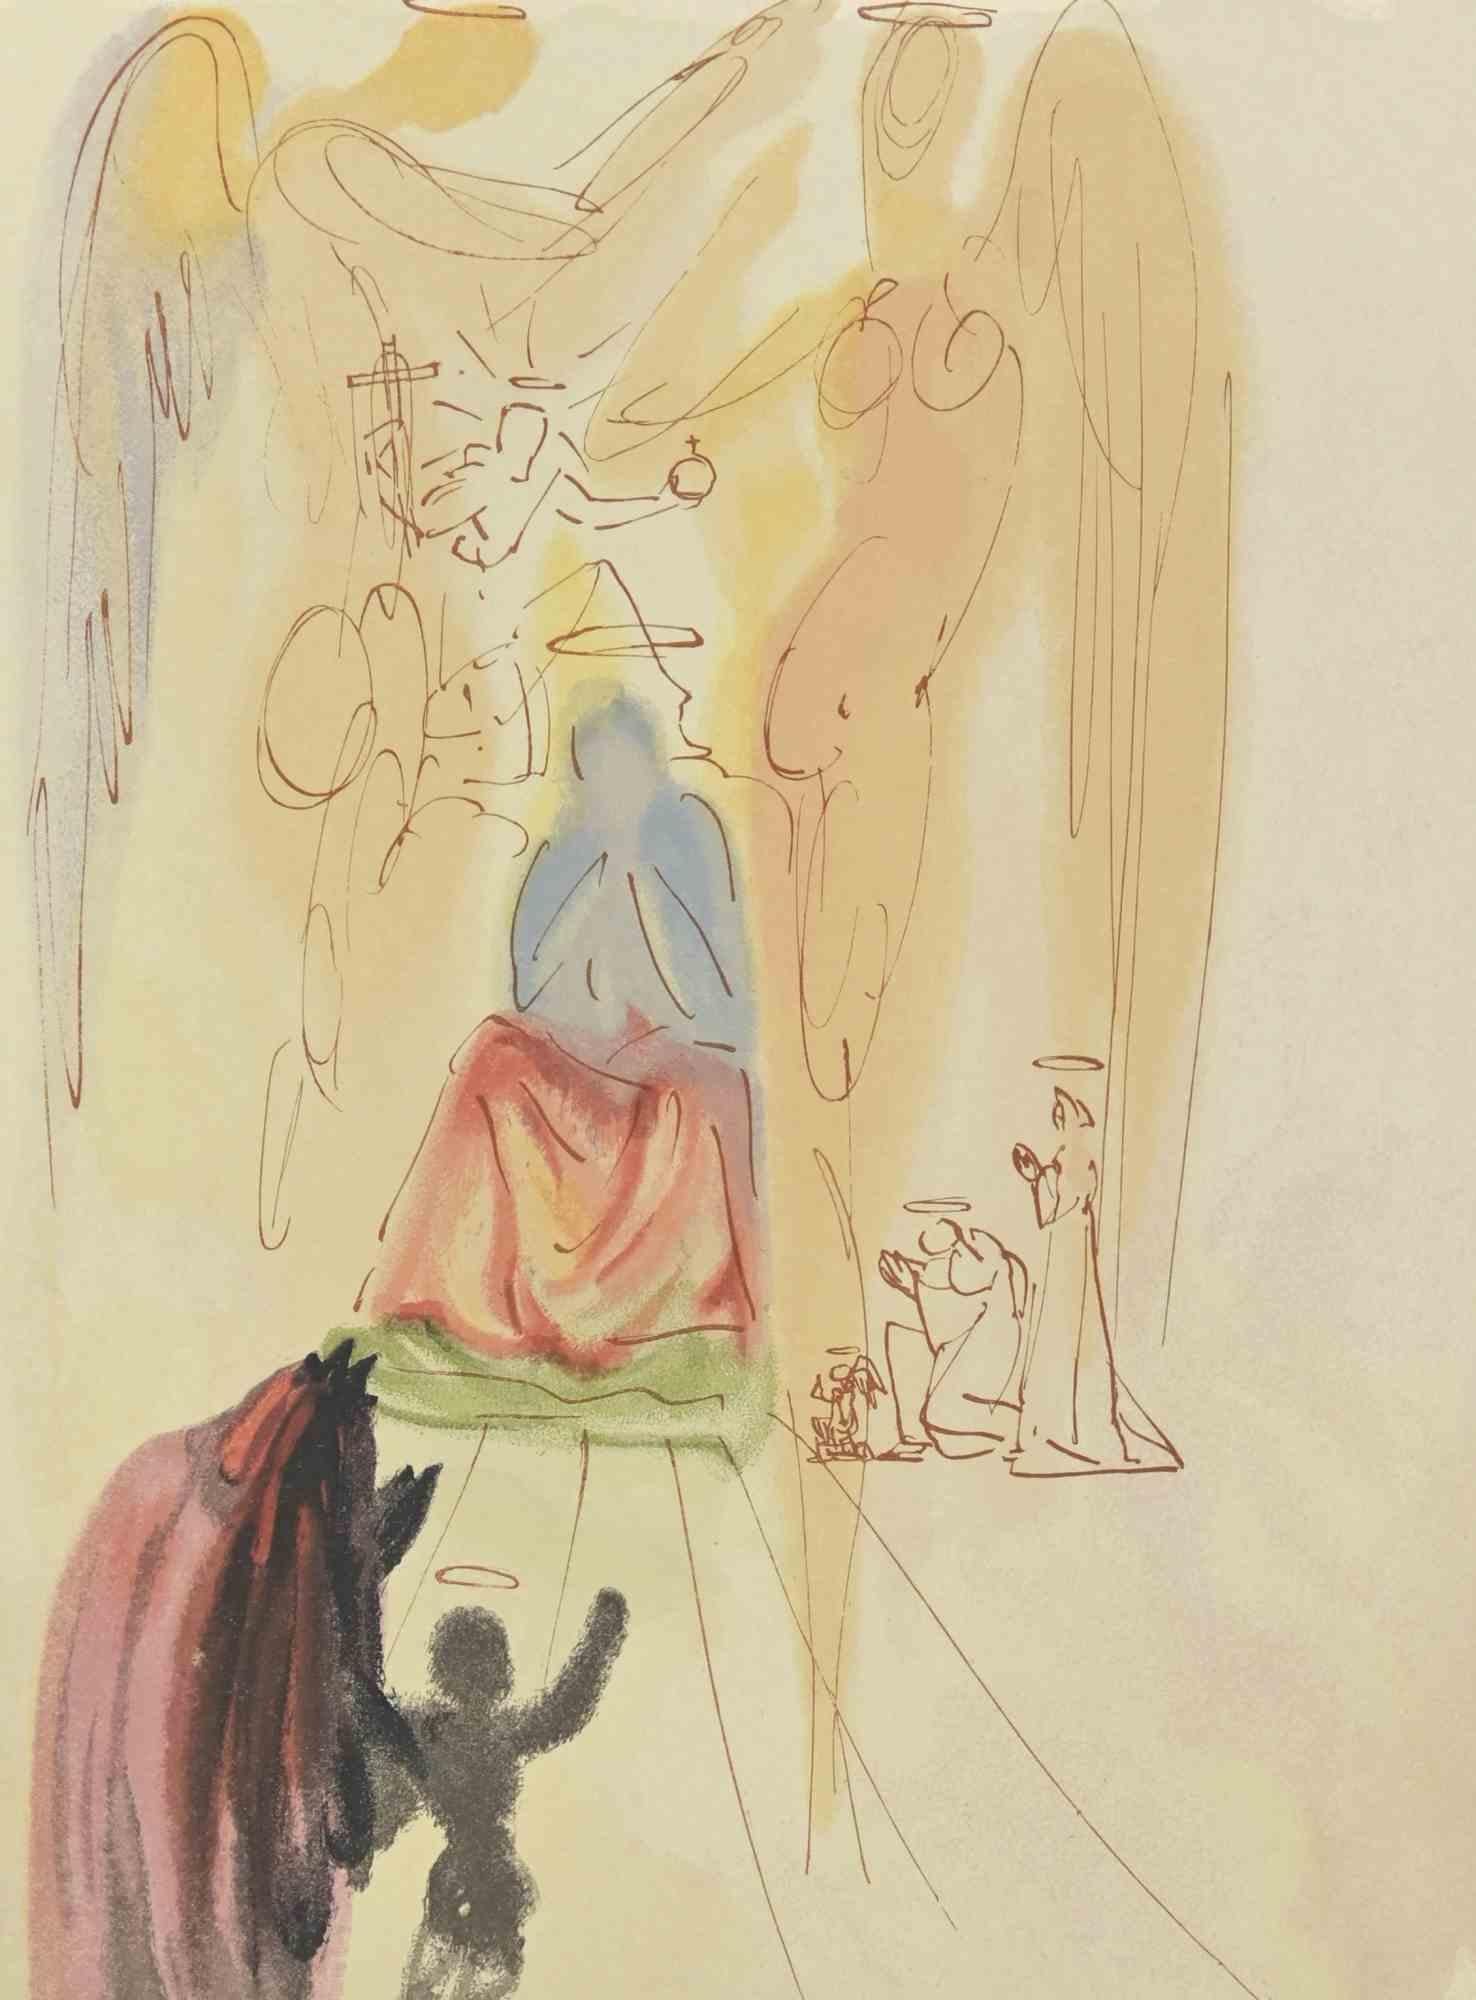 Beatrice und der Triumph der Heiligen  - Holzschnitt  - 1963 – Print von Salvador Dalí